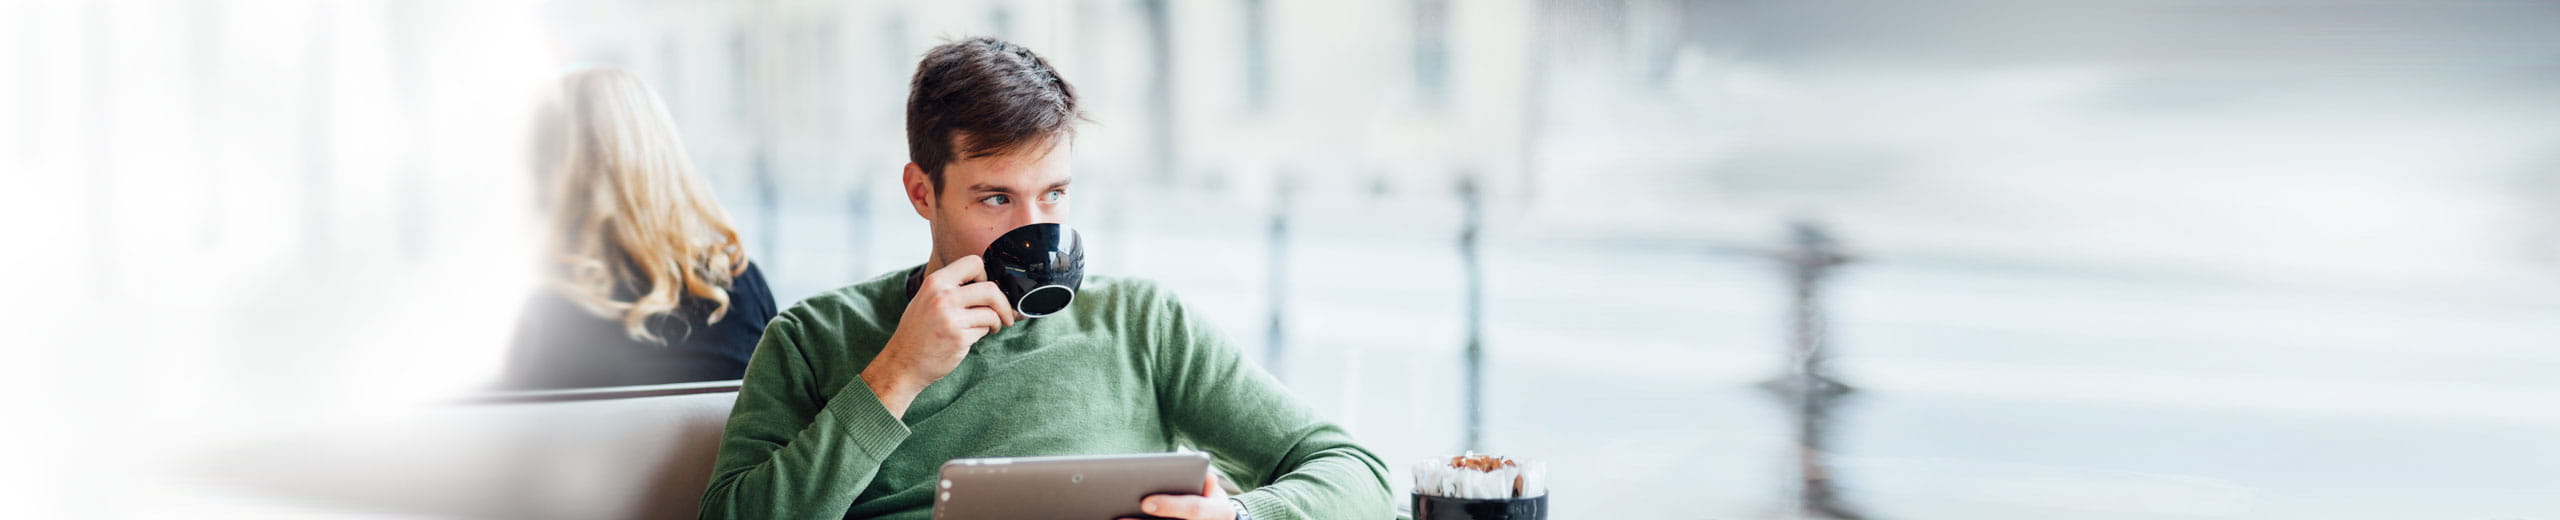 Mann trinkt mit rechter Hand Kaffee und hält mit linker Hand Tablet